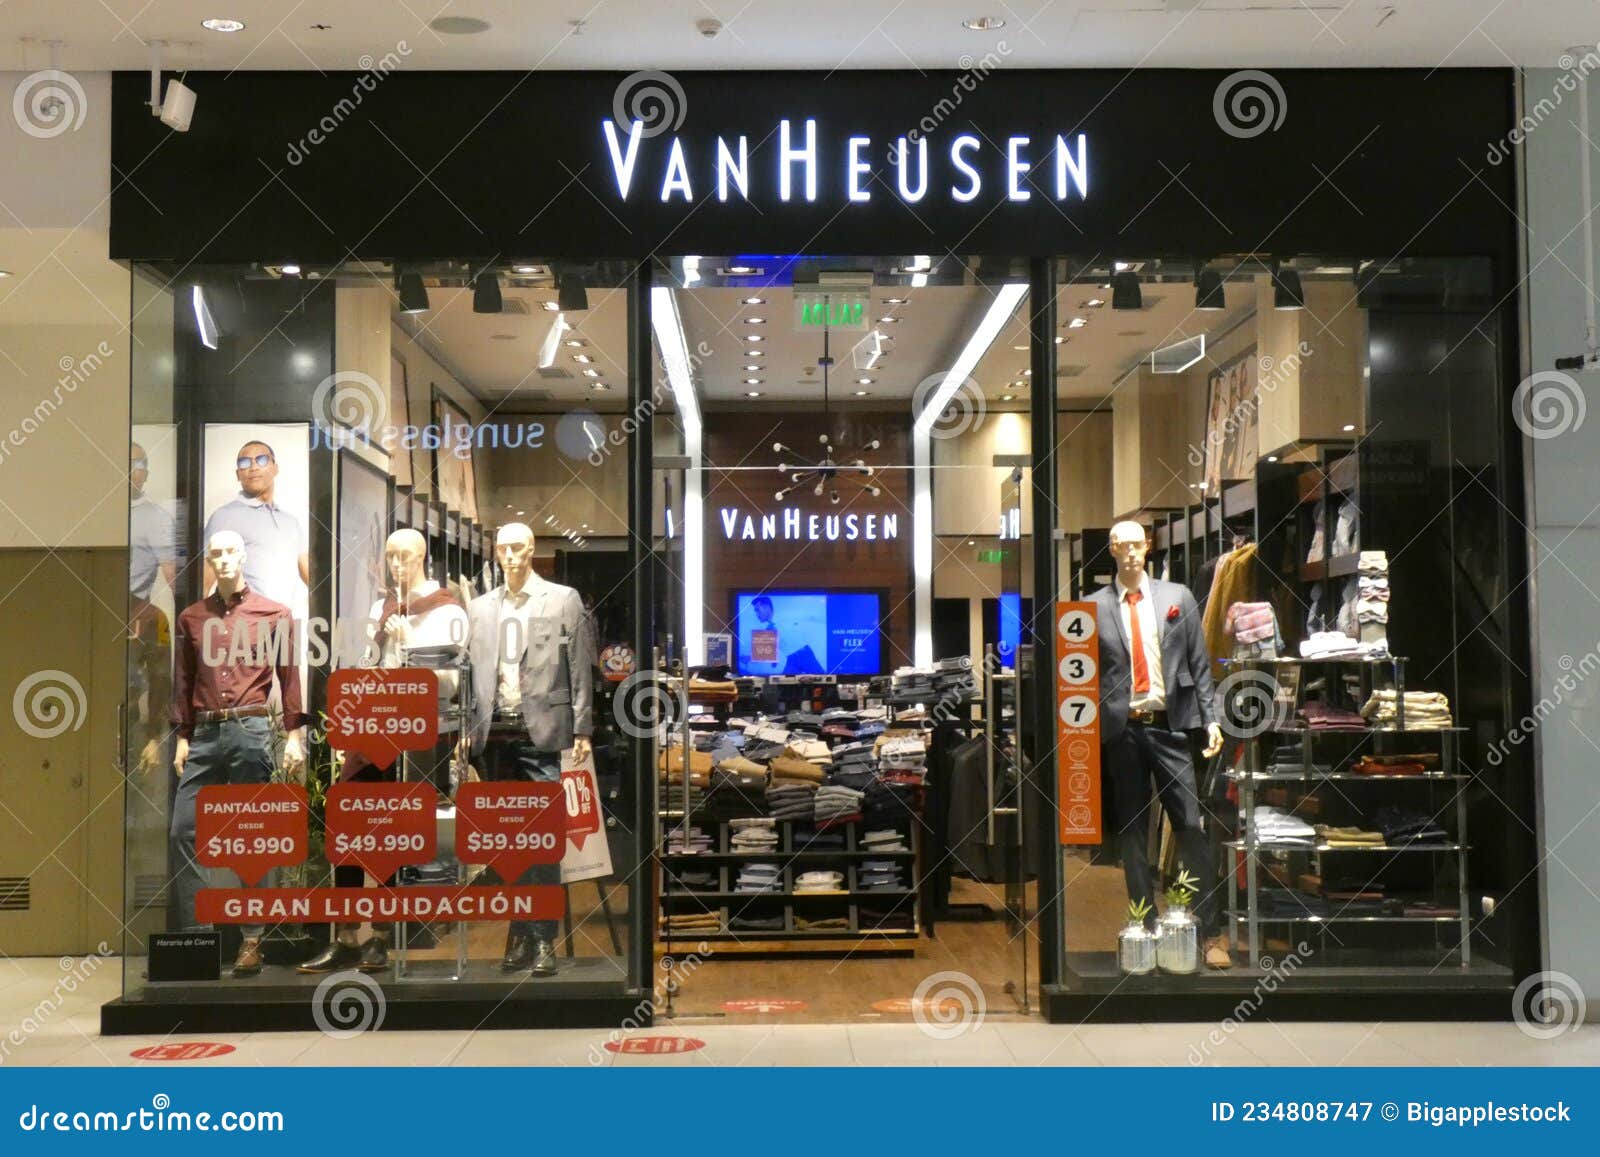 Van Heusen - Clothing (Brand)